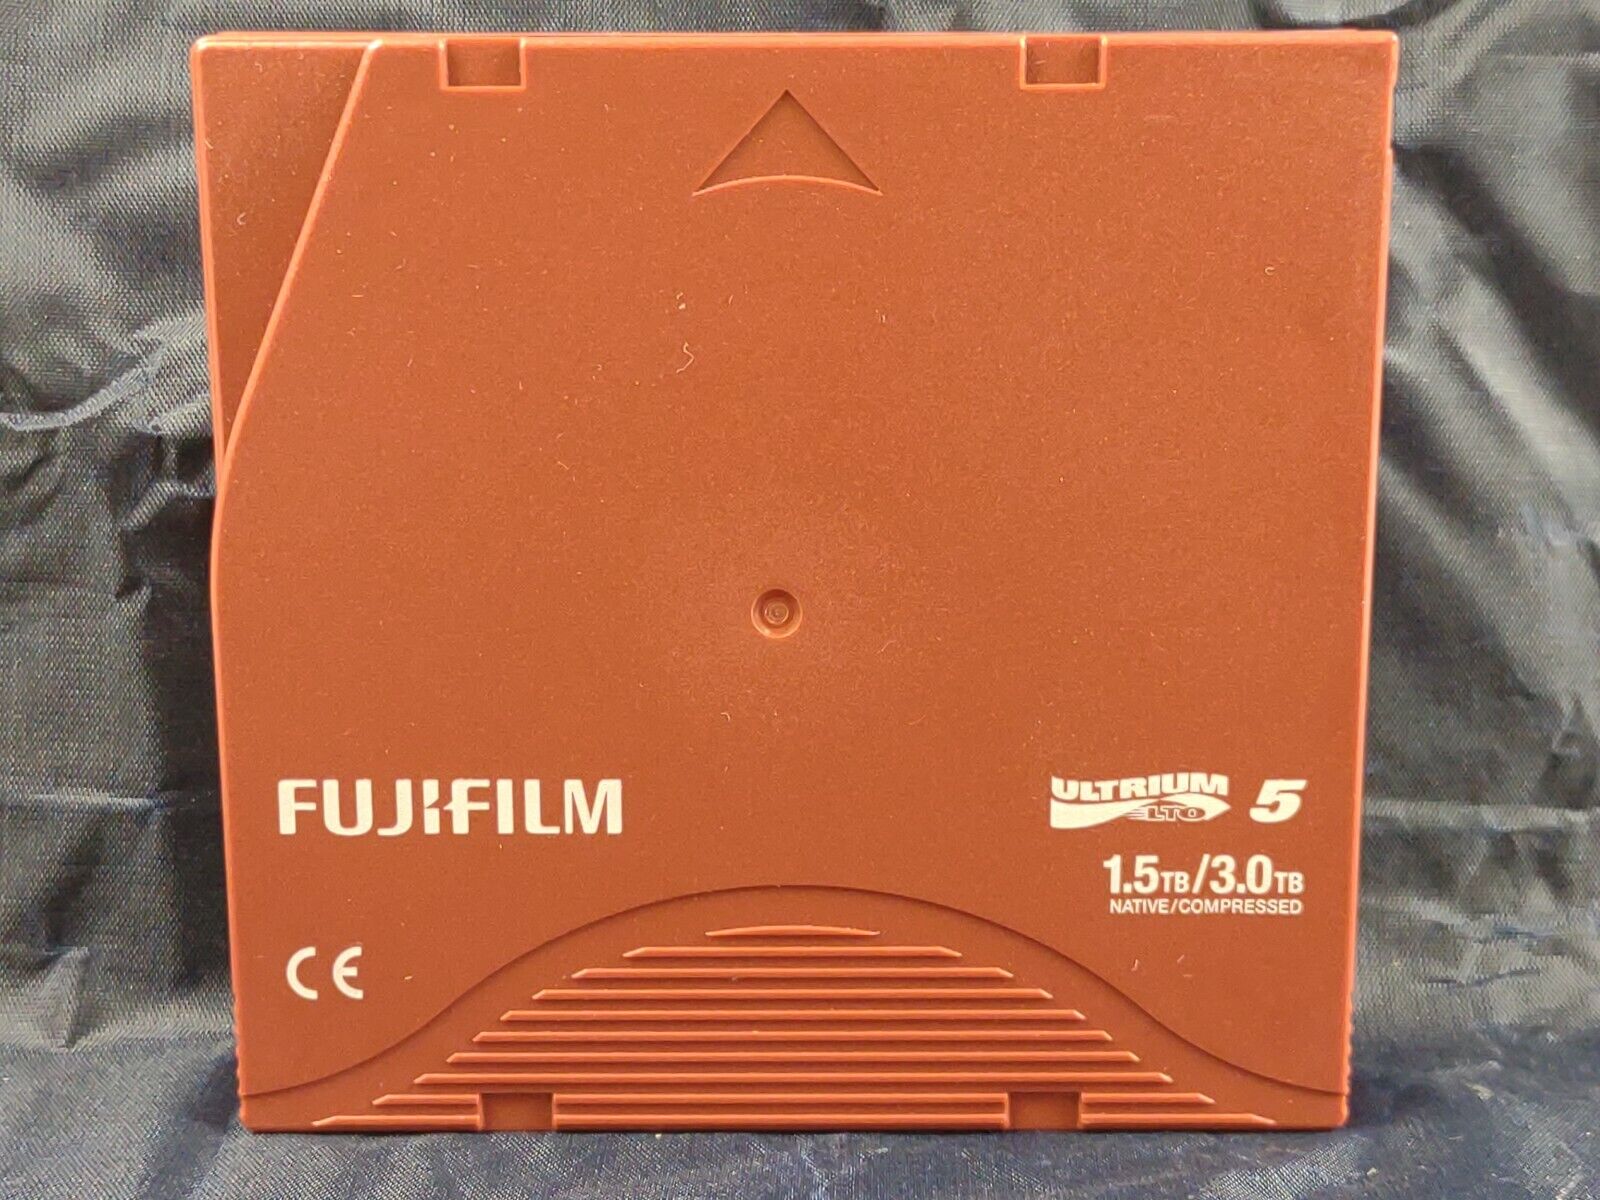 Fujifilm LTO Ultrium 5 Data Cartridge